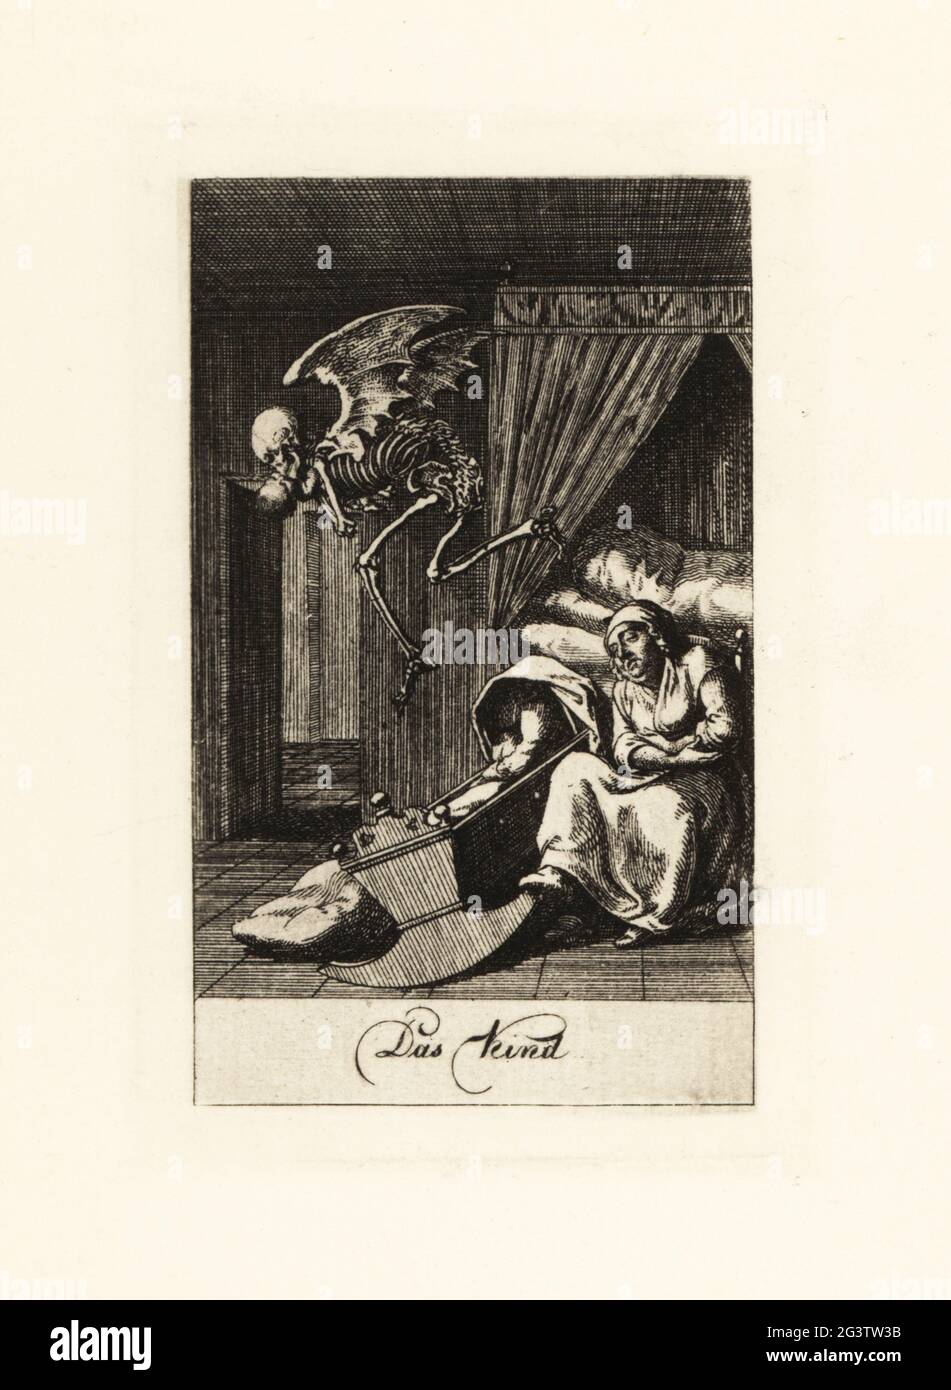 Le squelette de la mort vole avec un bébé. Le squelette ailé saute dans l'air avec le babe tandis que le sommeil nursemaid roque un berceau vide dans une chambre à coucher. Type DAS. Gravure en coperplate dessinée et gravée par Daniel Nikolaus Chodowiecki d'une série de danse de la mort, publiée à l'origine dans le calendrier de Lavenburg en 1792. Réimprimé à Totentanz à partir des plaques originales de Walther Nithack-Stahn, Eigenbrodler Verlag, Berlin, 1926. Banque D'Images